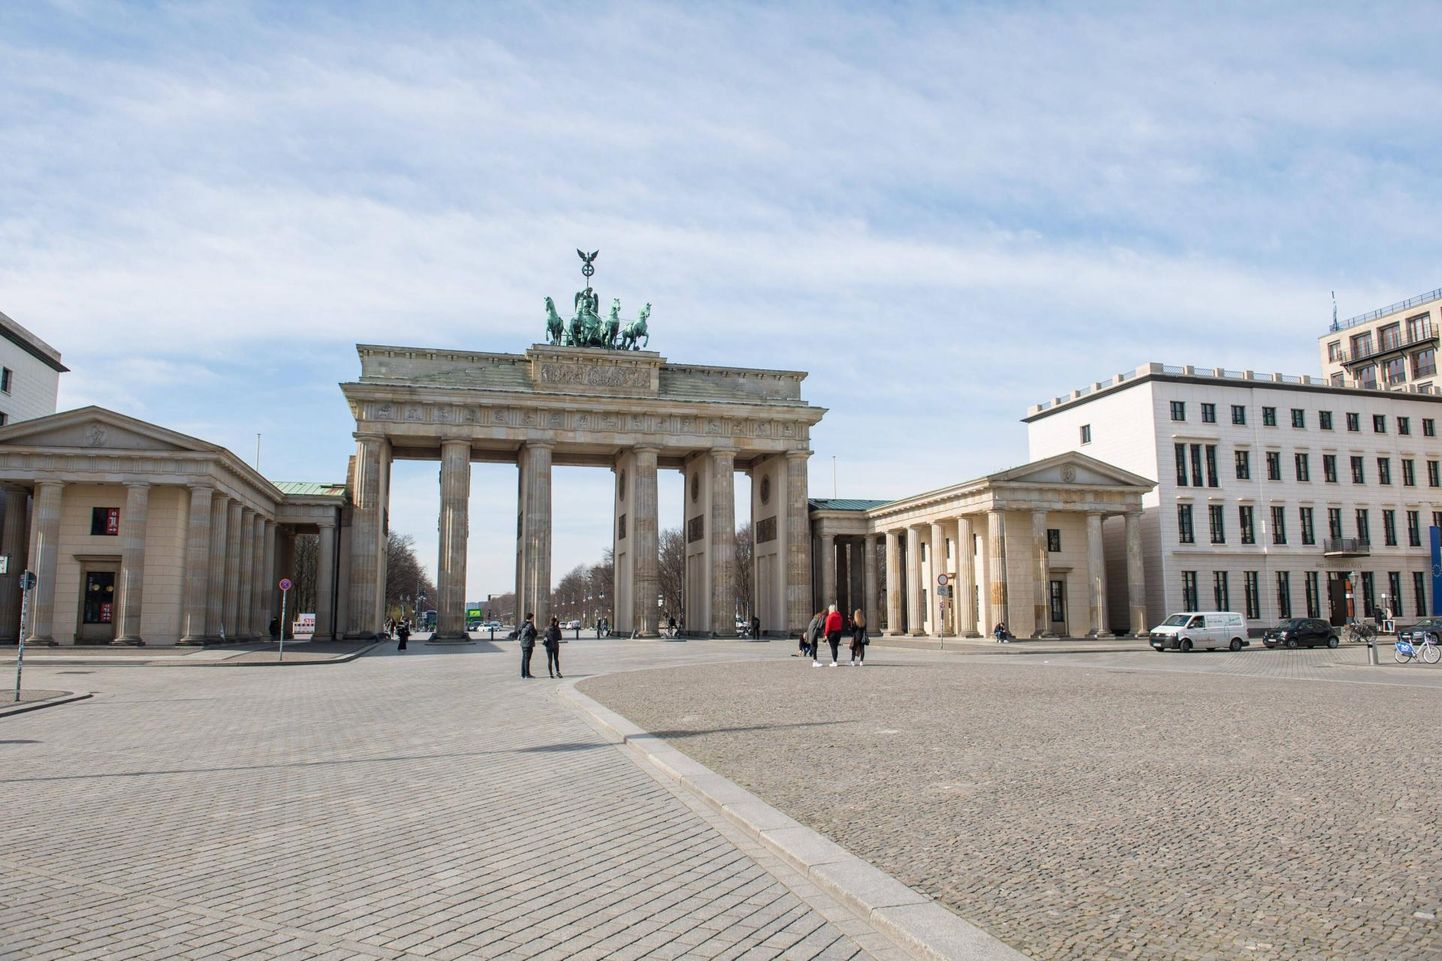 Koroonakriisi mõjud Saksamaa kultuurielus olid näha juba paar päeva pärast Senati otsust sulgeda kohvikud, muuseumid, näitused, teatrid ja ülikoolid. Pildil Berliini Brandenburgi väravate esine väljak, mis varem pulbitses inimestest.